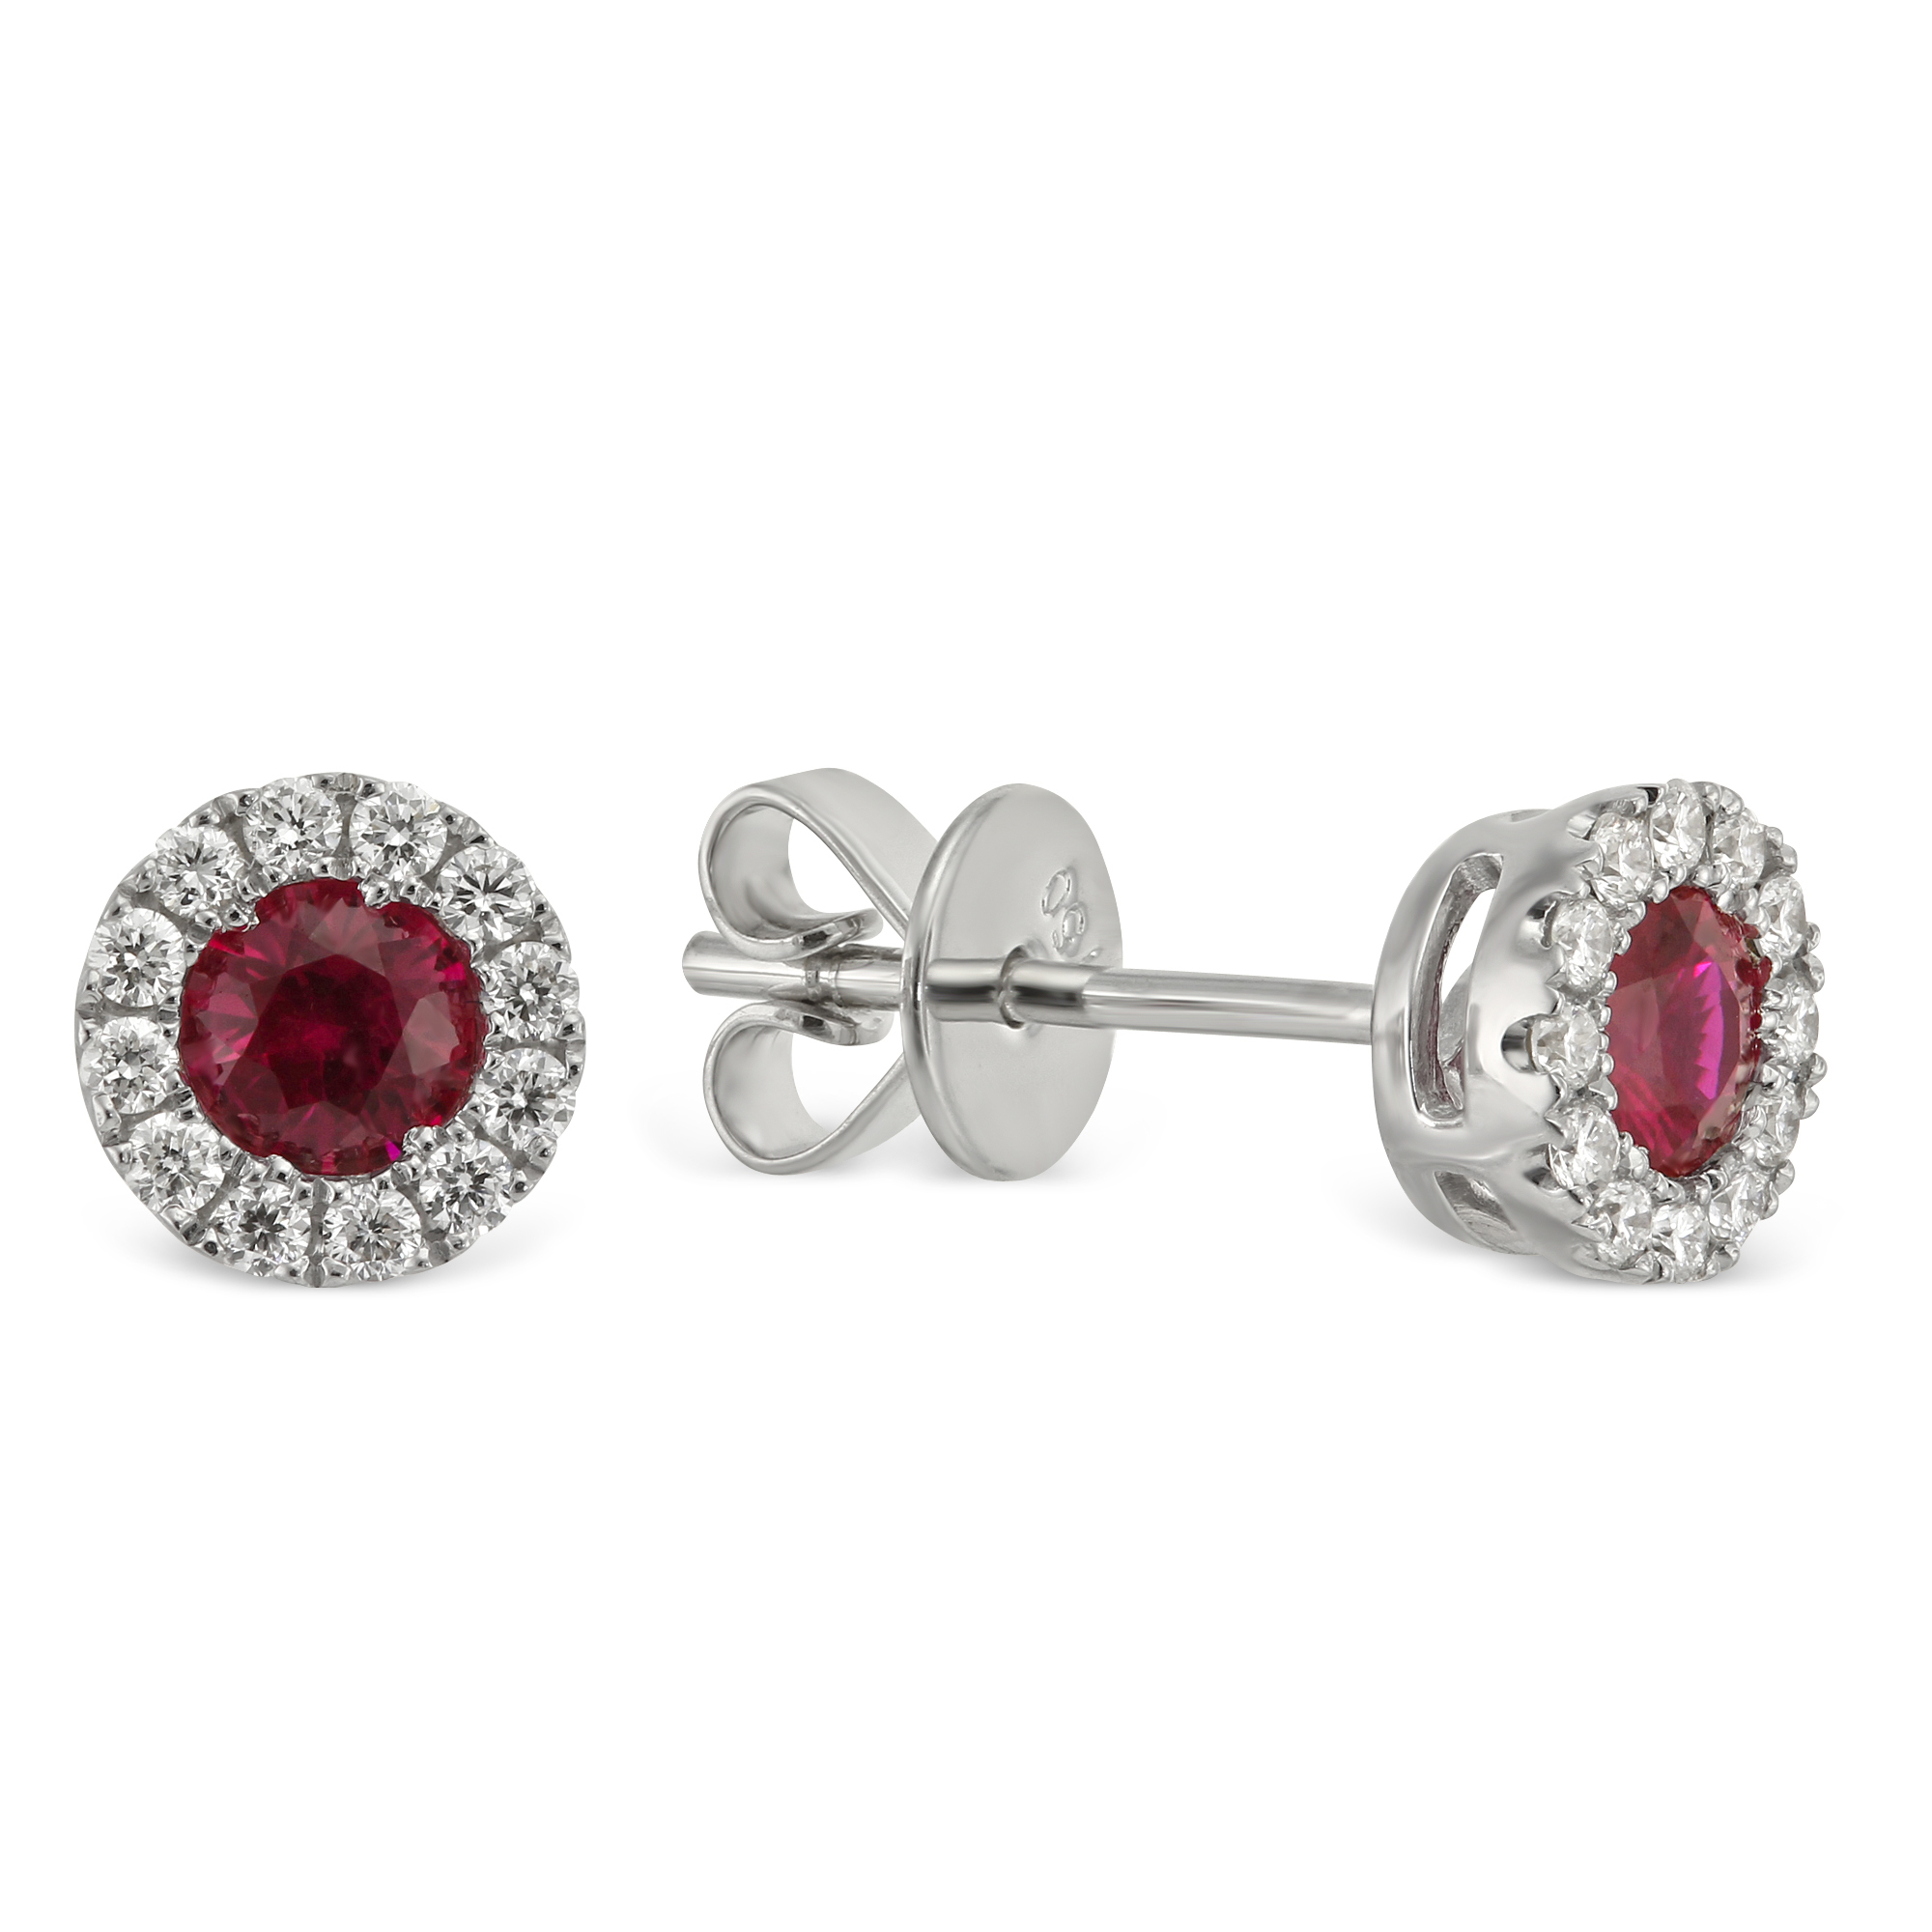 18K White Gold Round Ruby & Diamond Halo Earrings | Borsheims